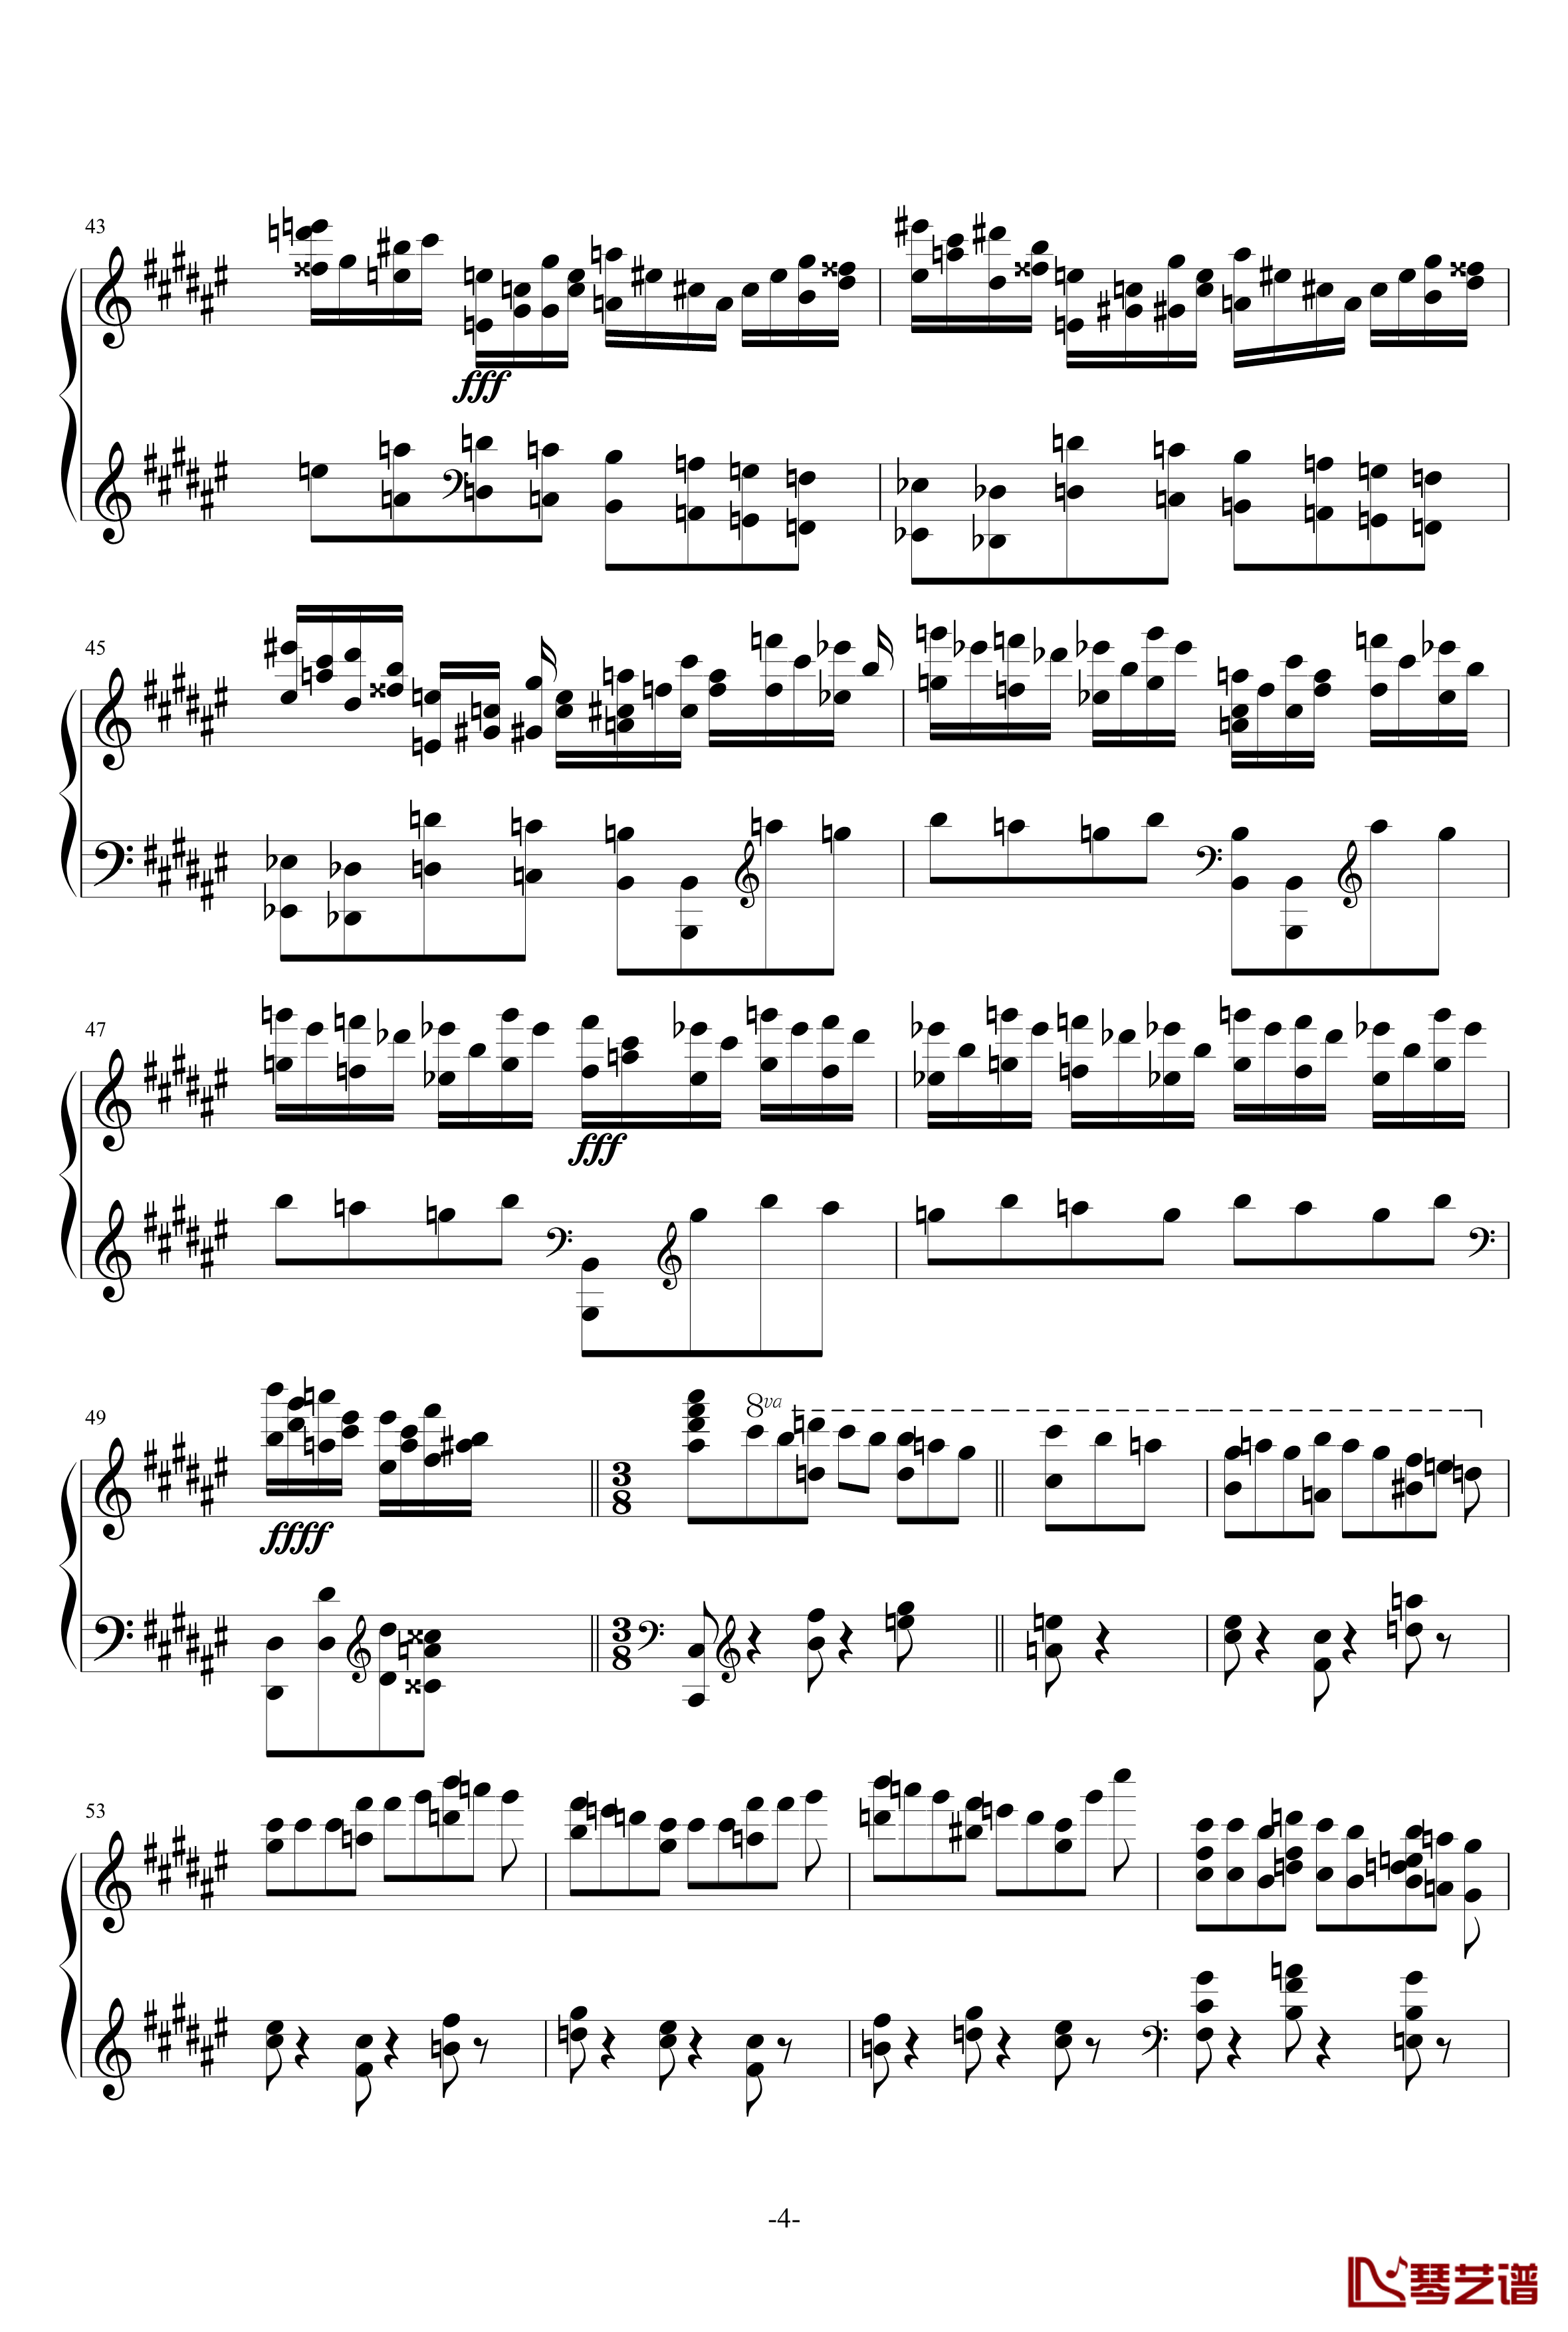 伊比利亚塞维利亚的圣体祭钢琴谱-阿尔贝兹尼4